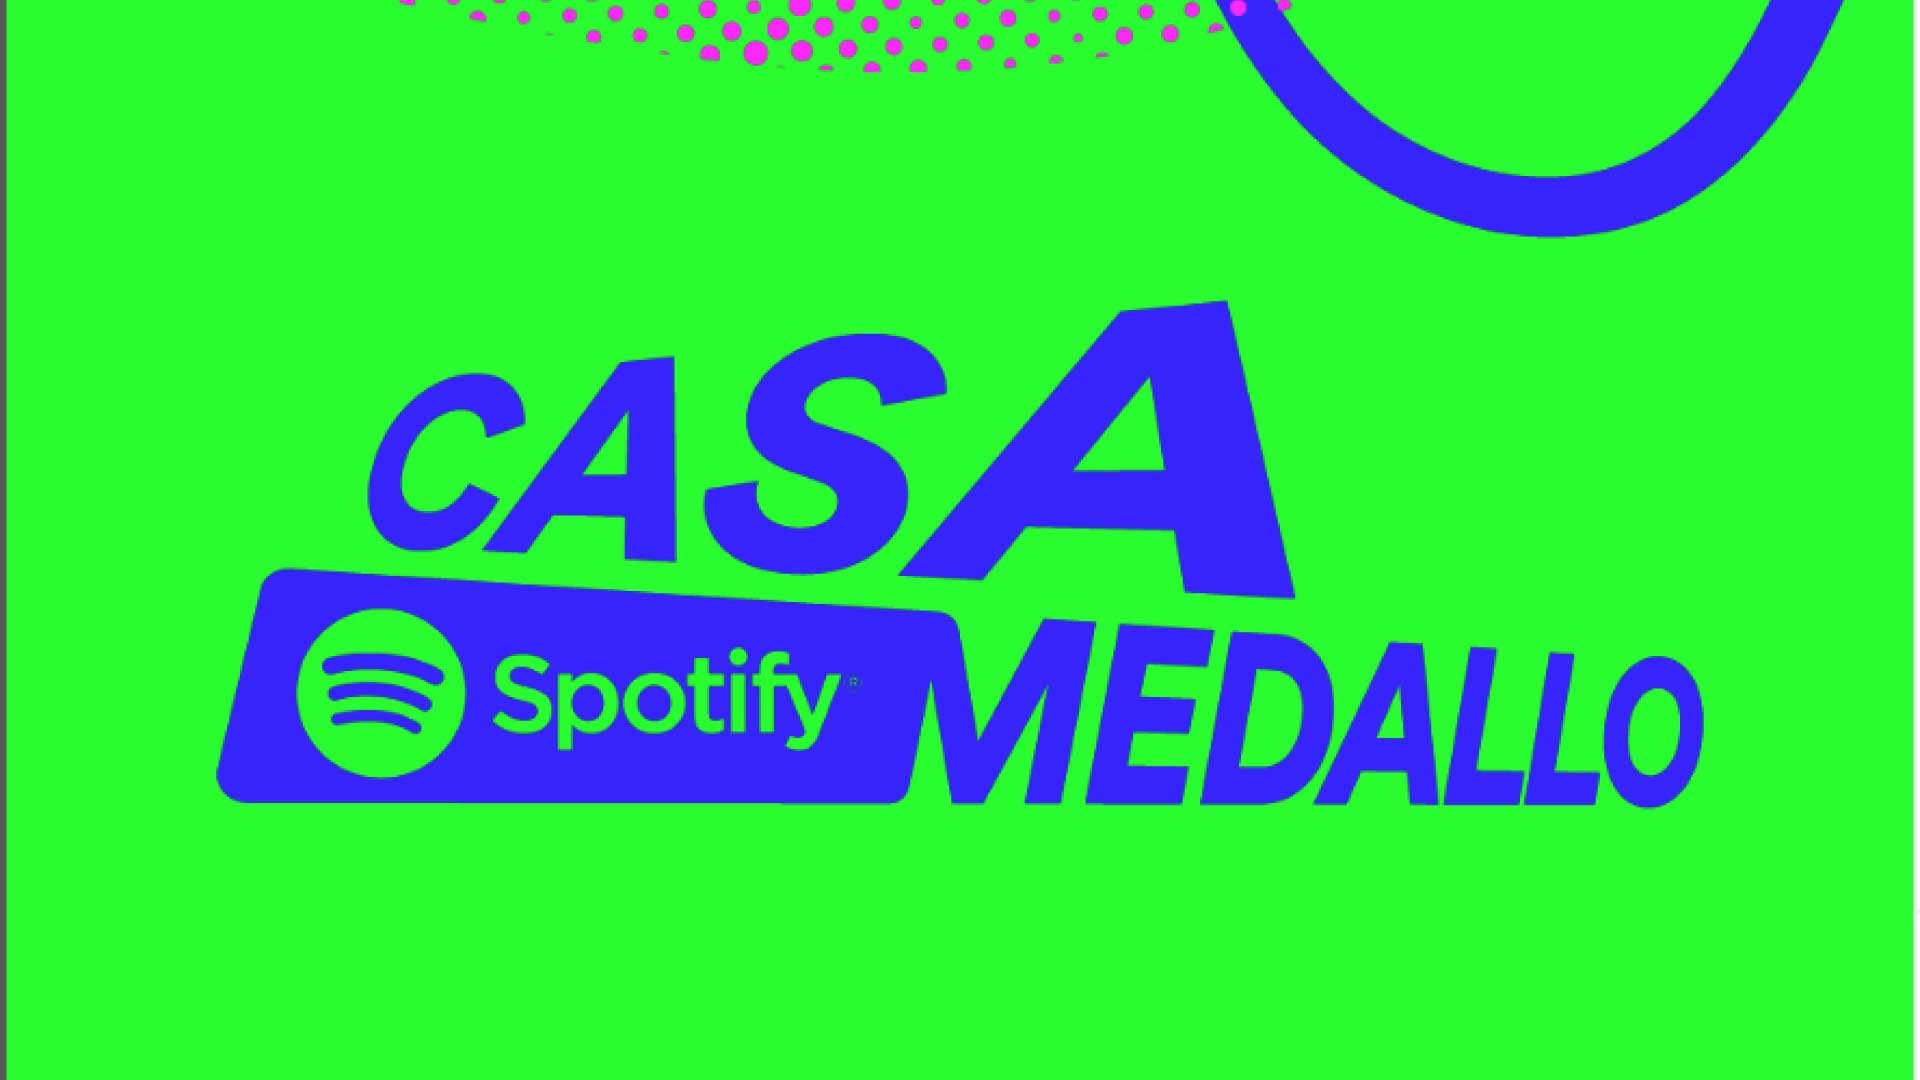 La casa de Spotify está en Medellín